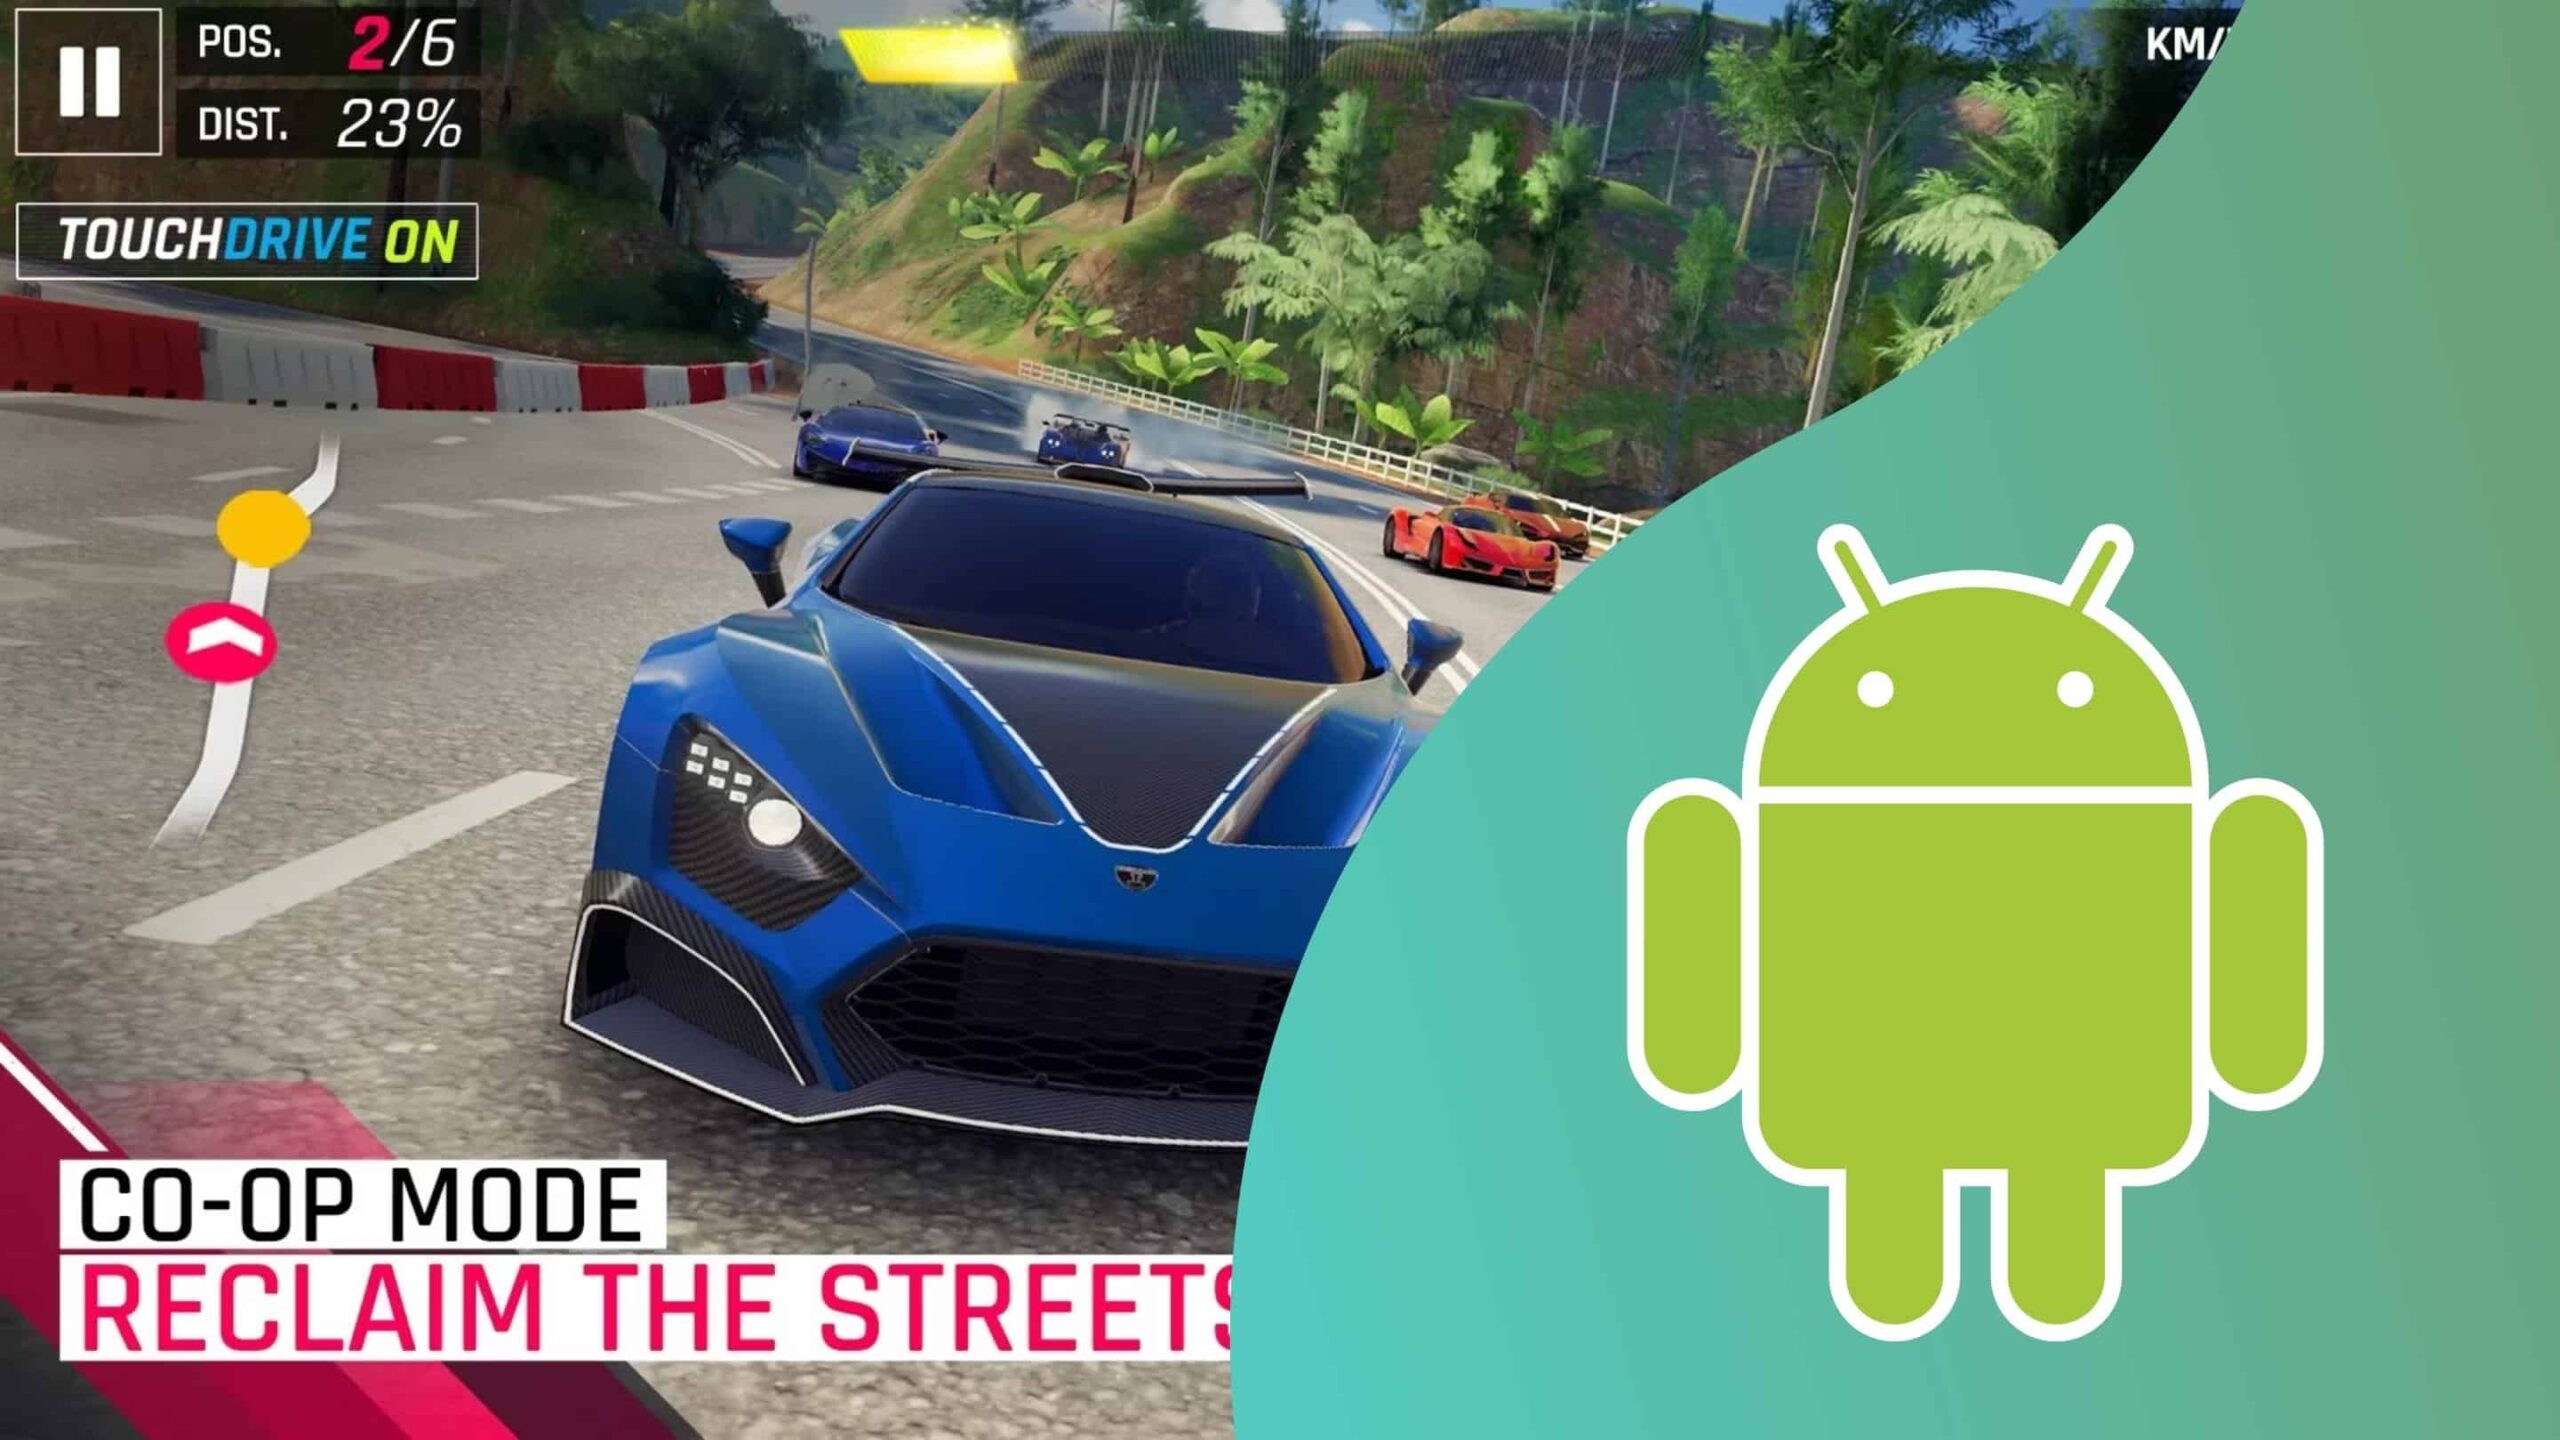 Jogos de Corridas de Carros Android: Notícias e dicas